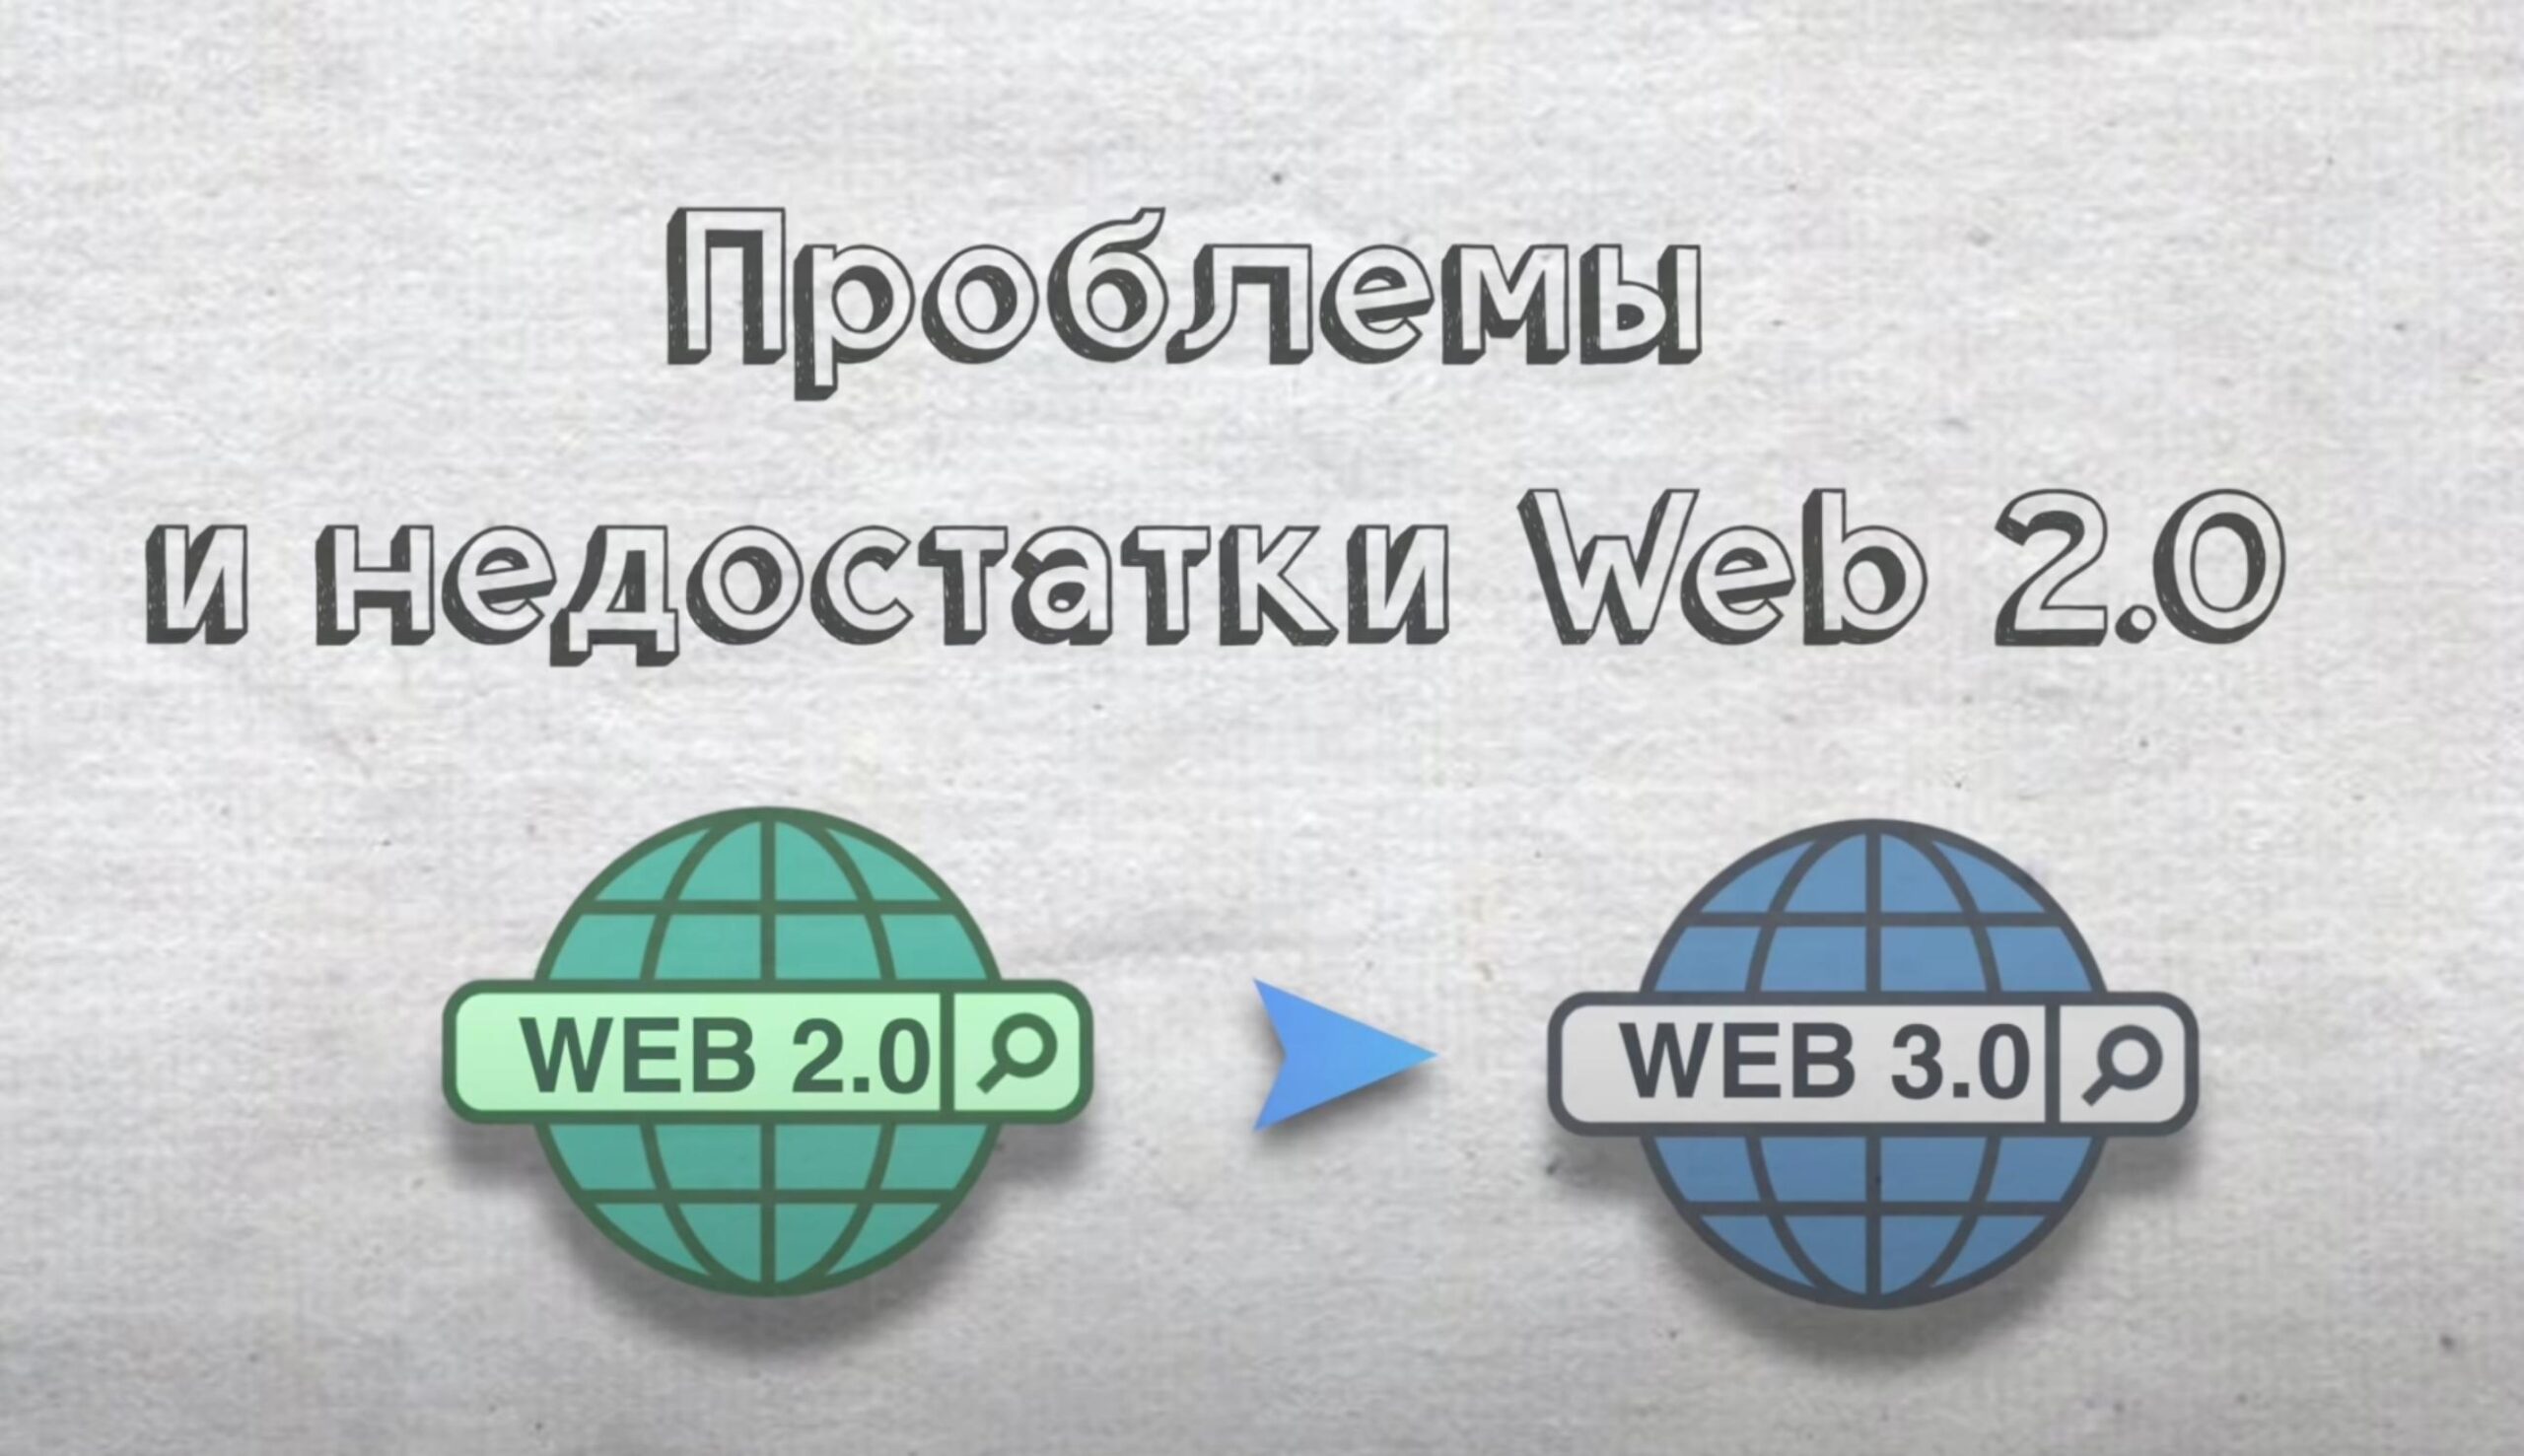 Проблемы Web 2.0.